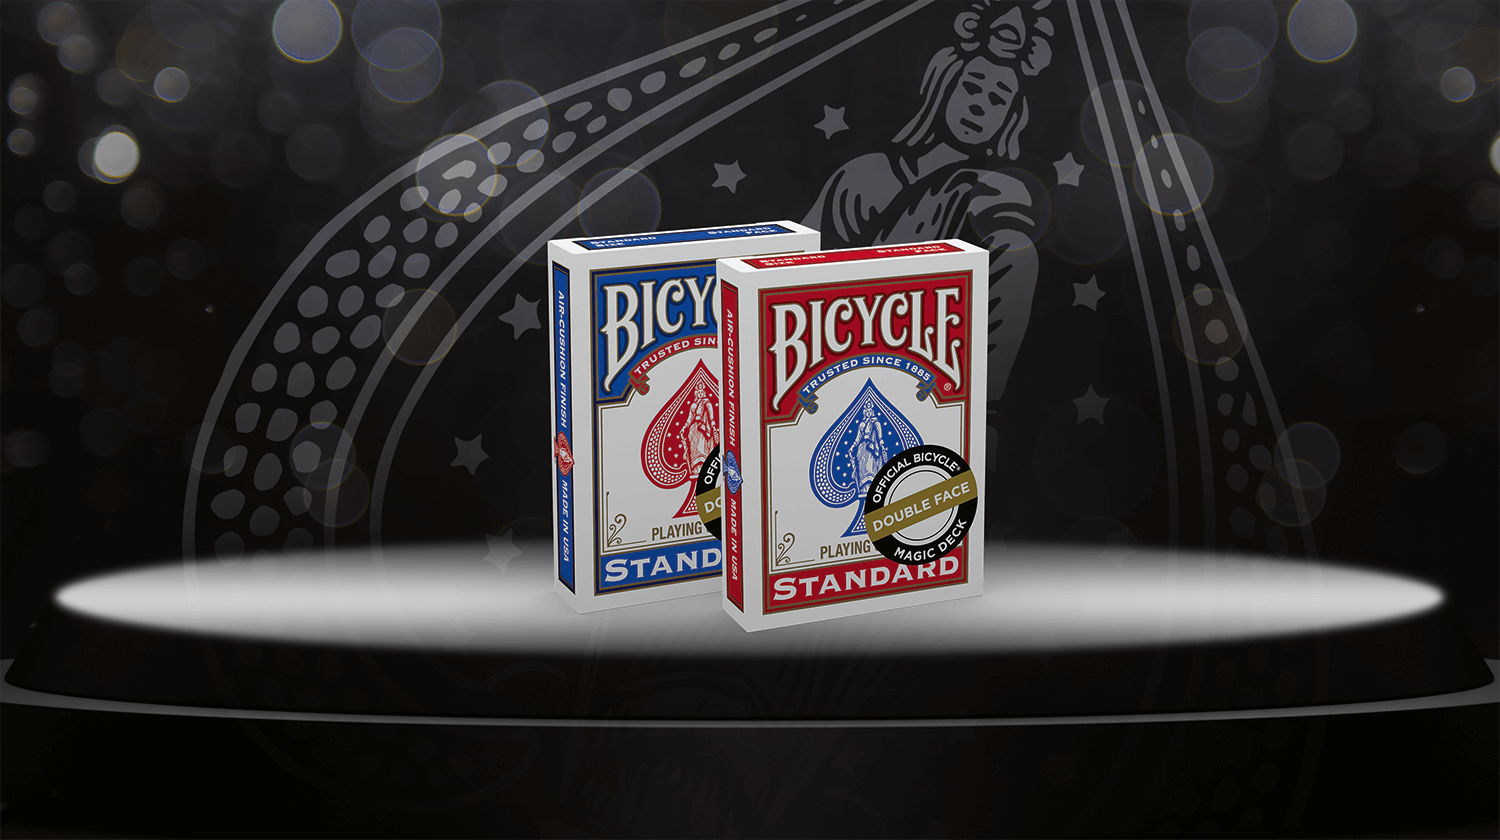 Zu sehen ist das Bicycle Trick Deck Double Face in den beiden Farbvarianten Rot und Blau vor einem schwarzen Hintergrund mit Bicycle Logo.